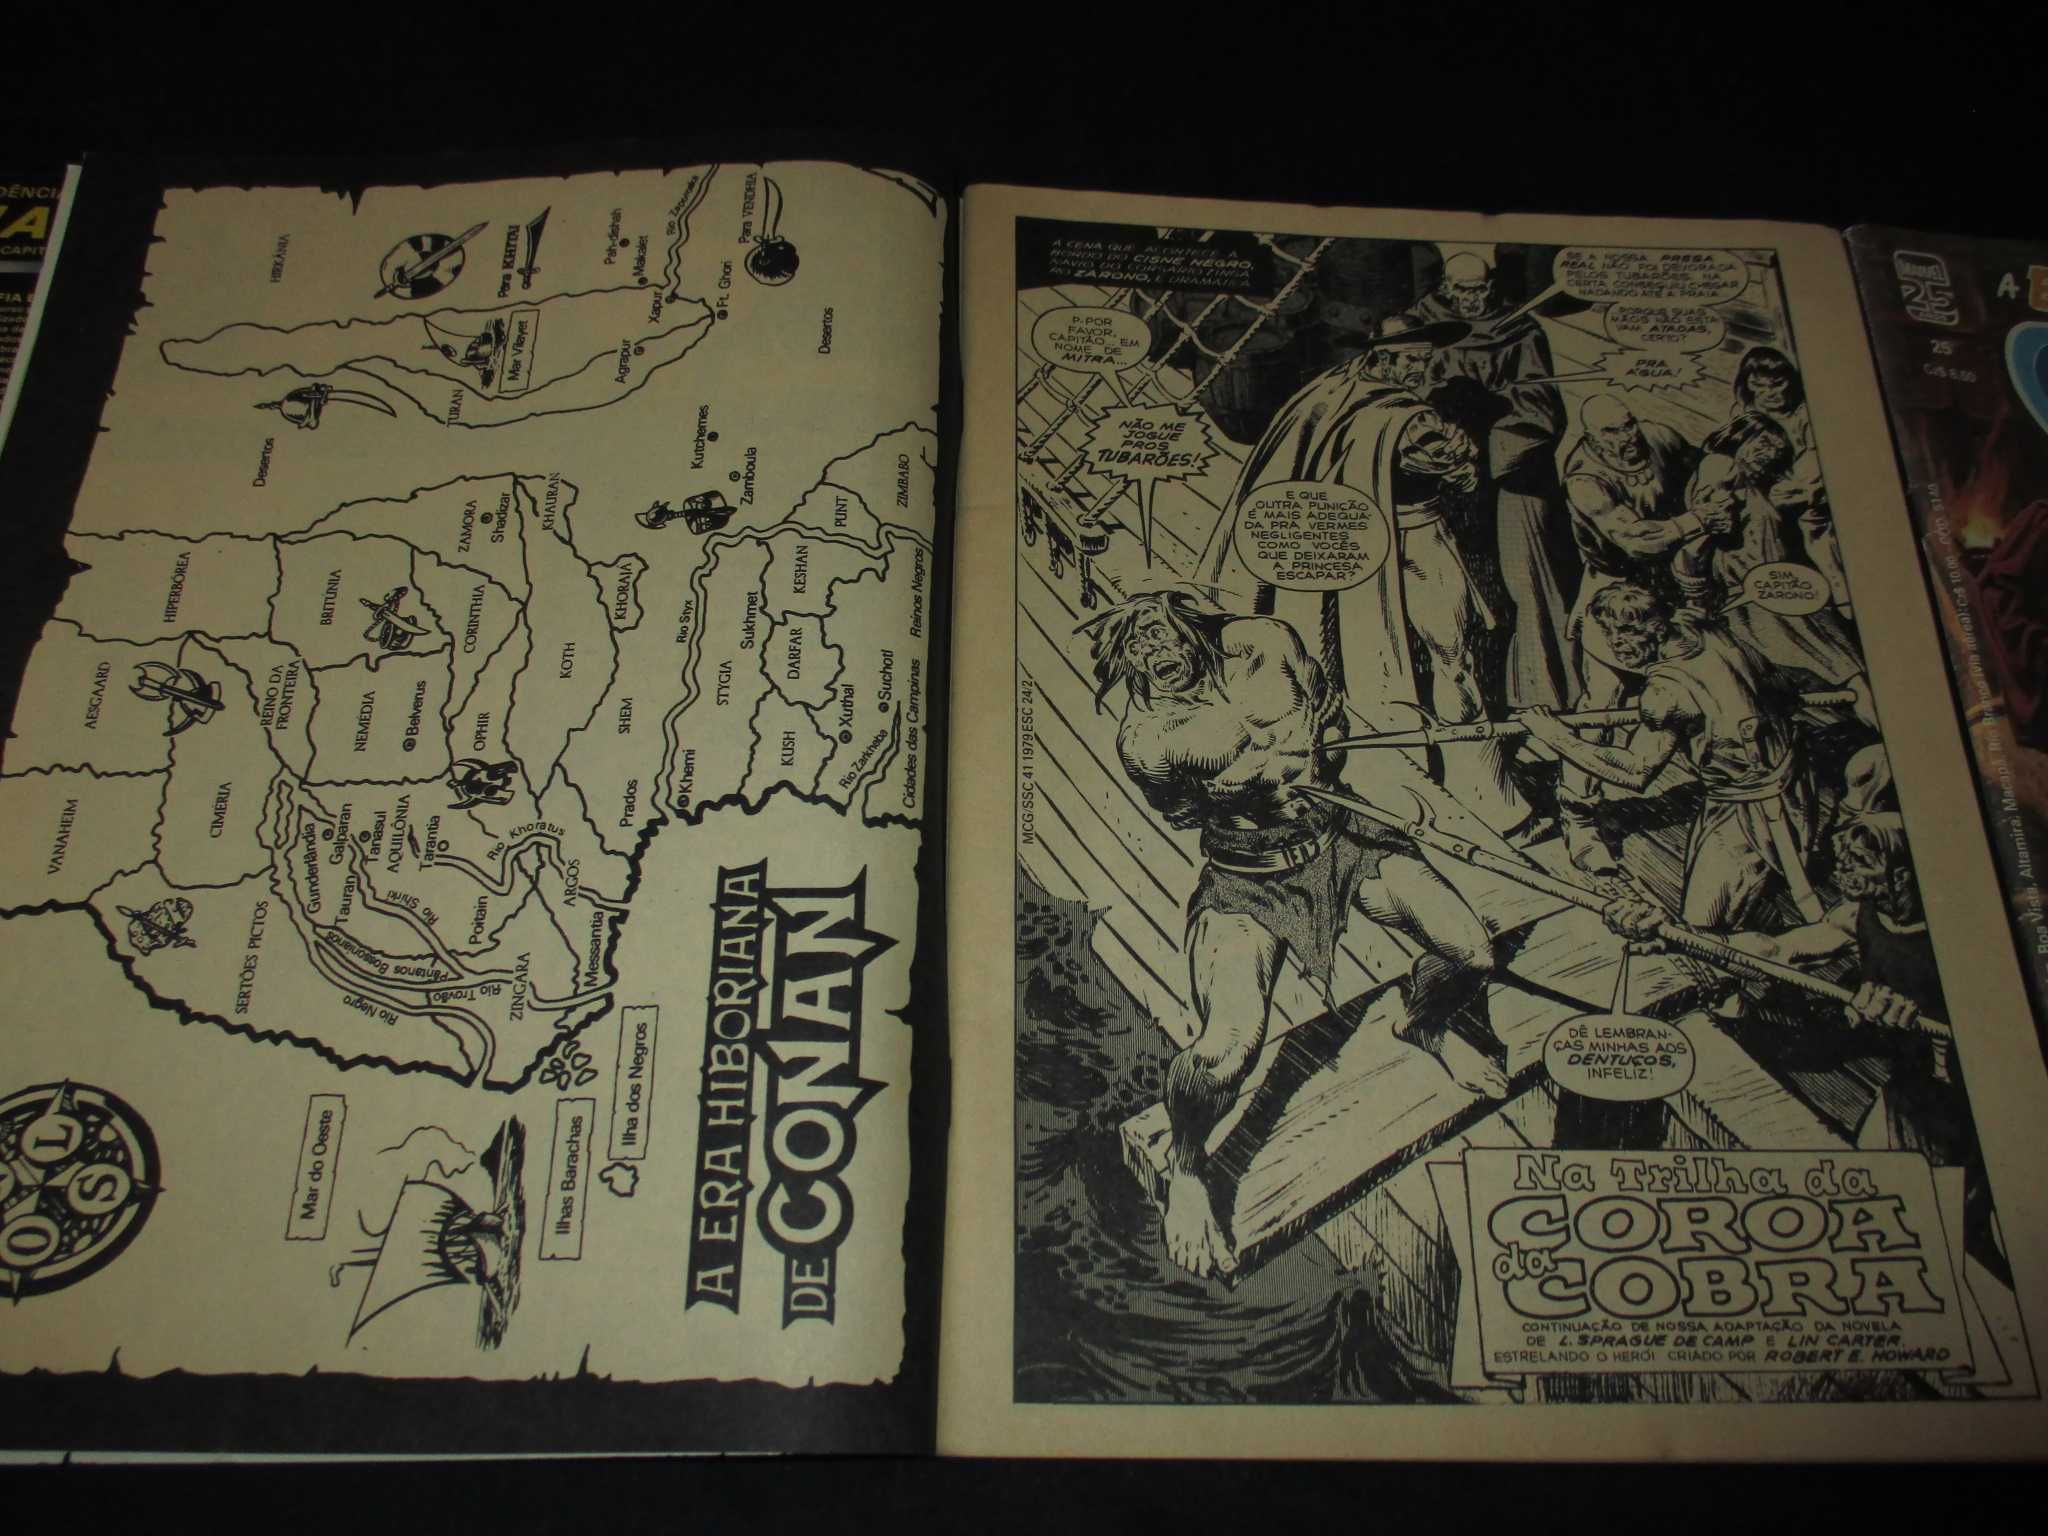 Livros BD A Espada Selvagem de Conan A4 Marvel